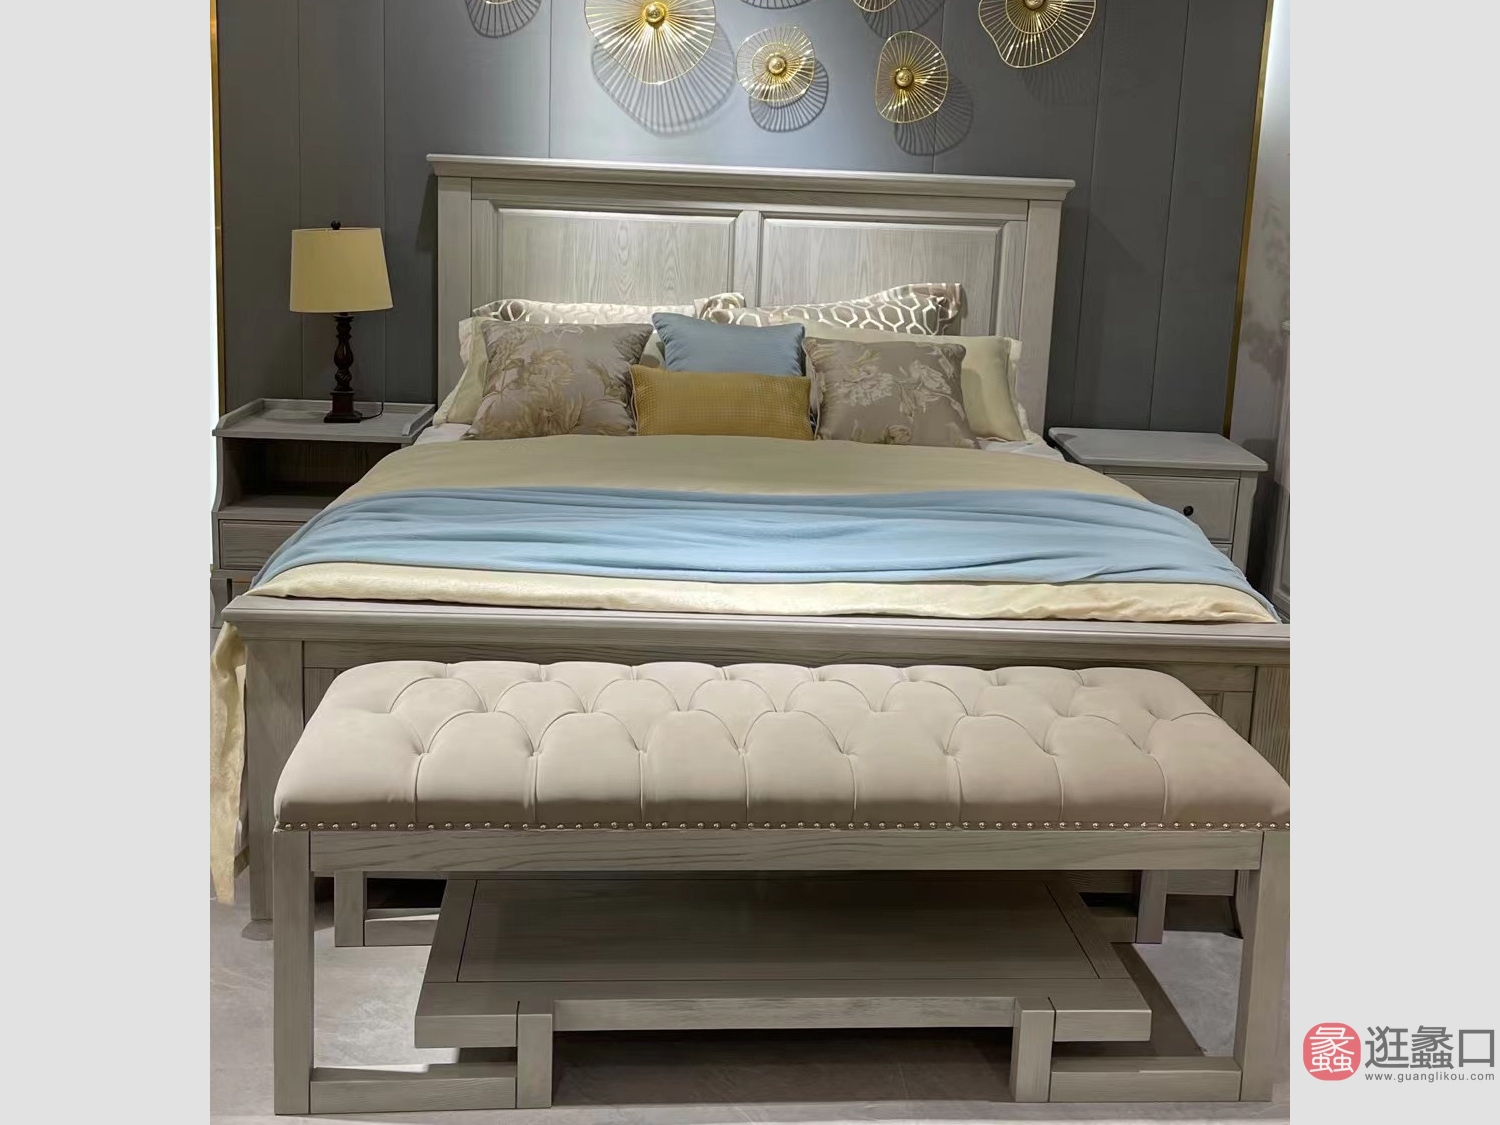 利美达家具卧室美式轻奢实木床双人床主卧LMD005